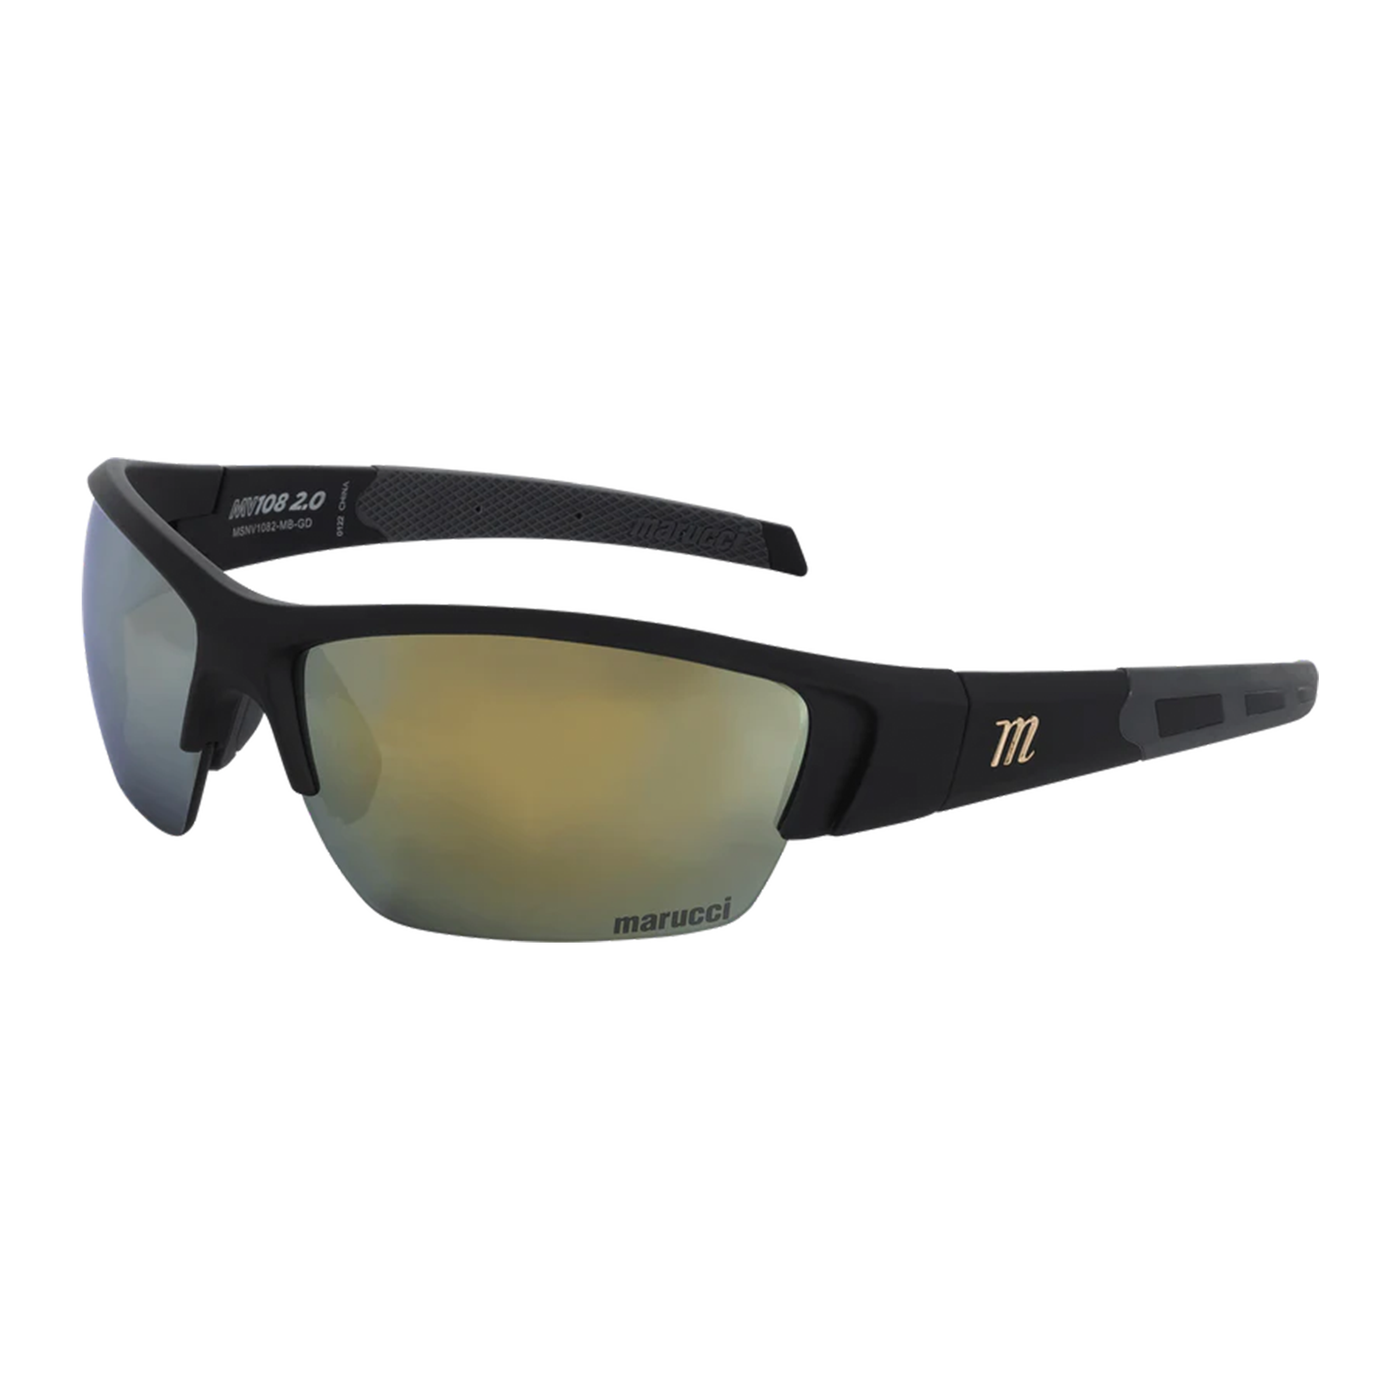 Marucci MV108 Sunglasses